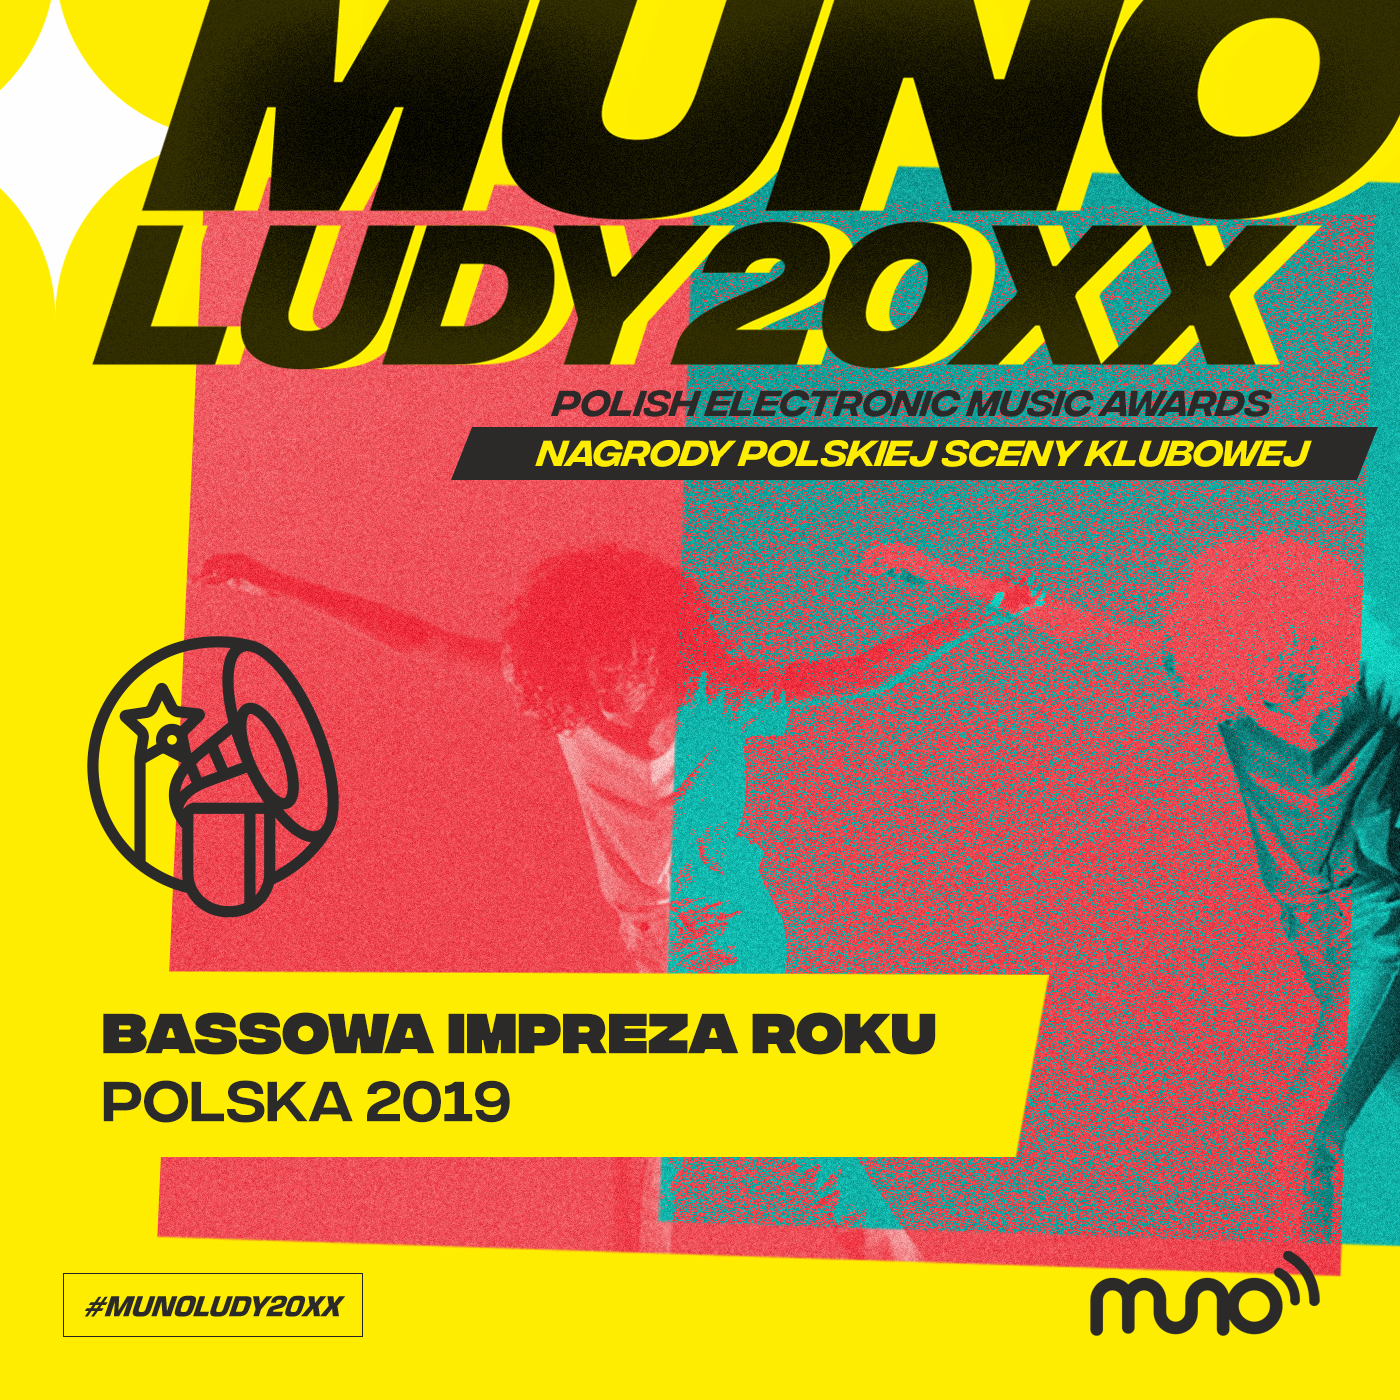 Munoludy 20XX Bassowa Impreza Roku Polska 2019